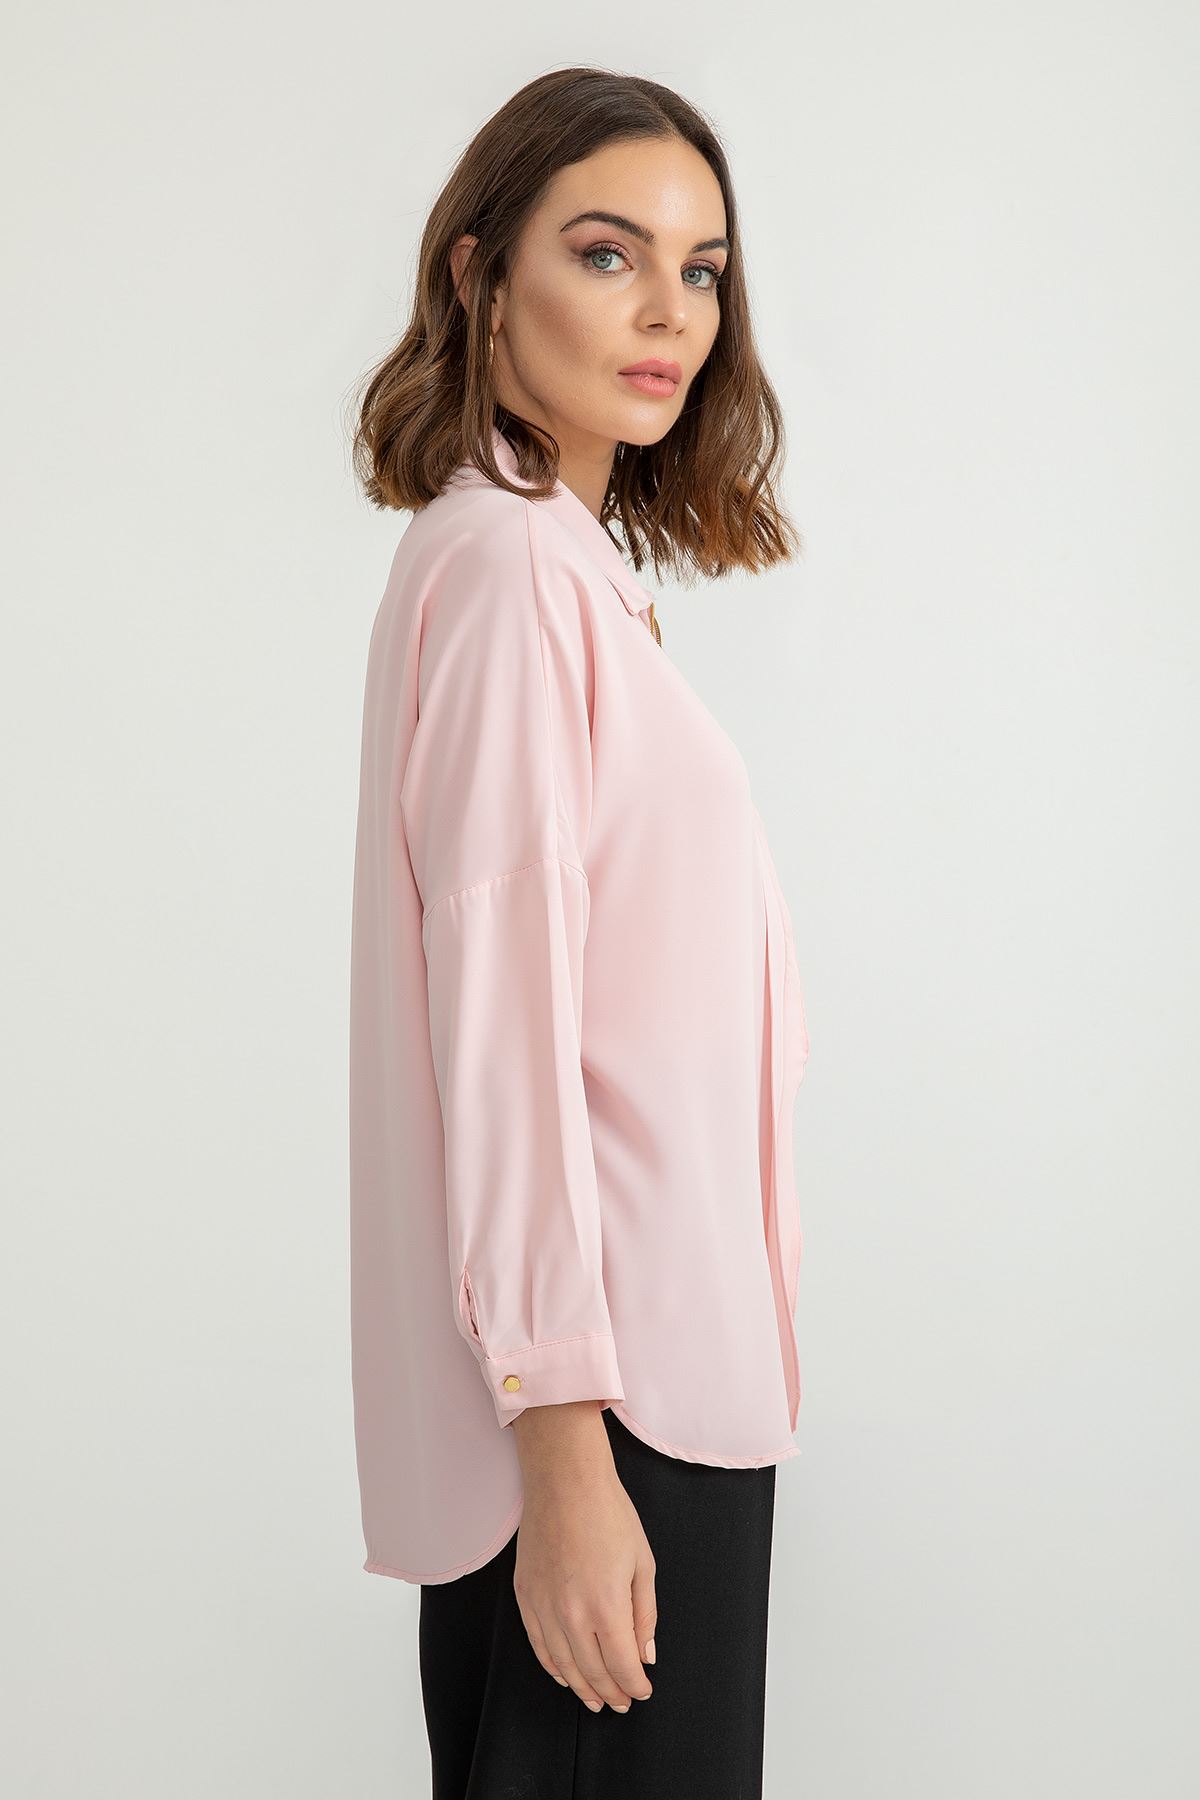 джессика ткань Женская рубашка с молнией спереди - Светло розовый